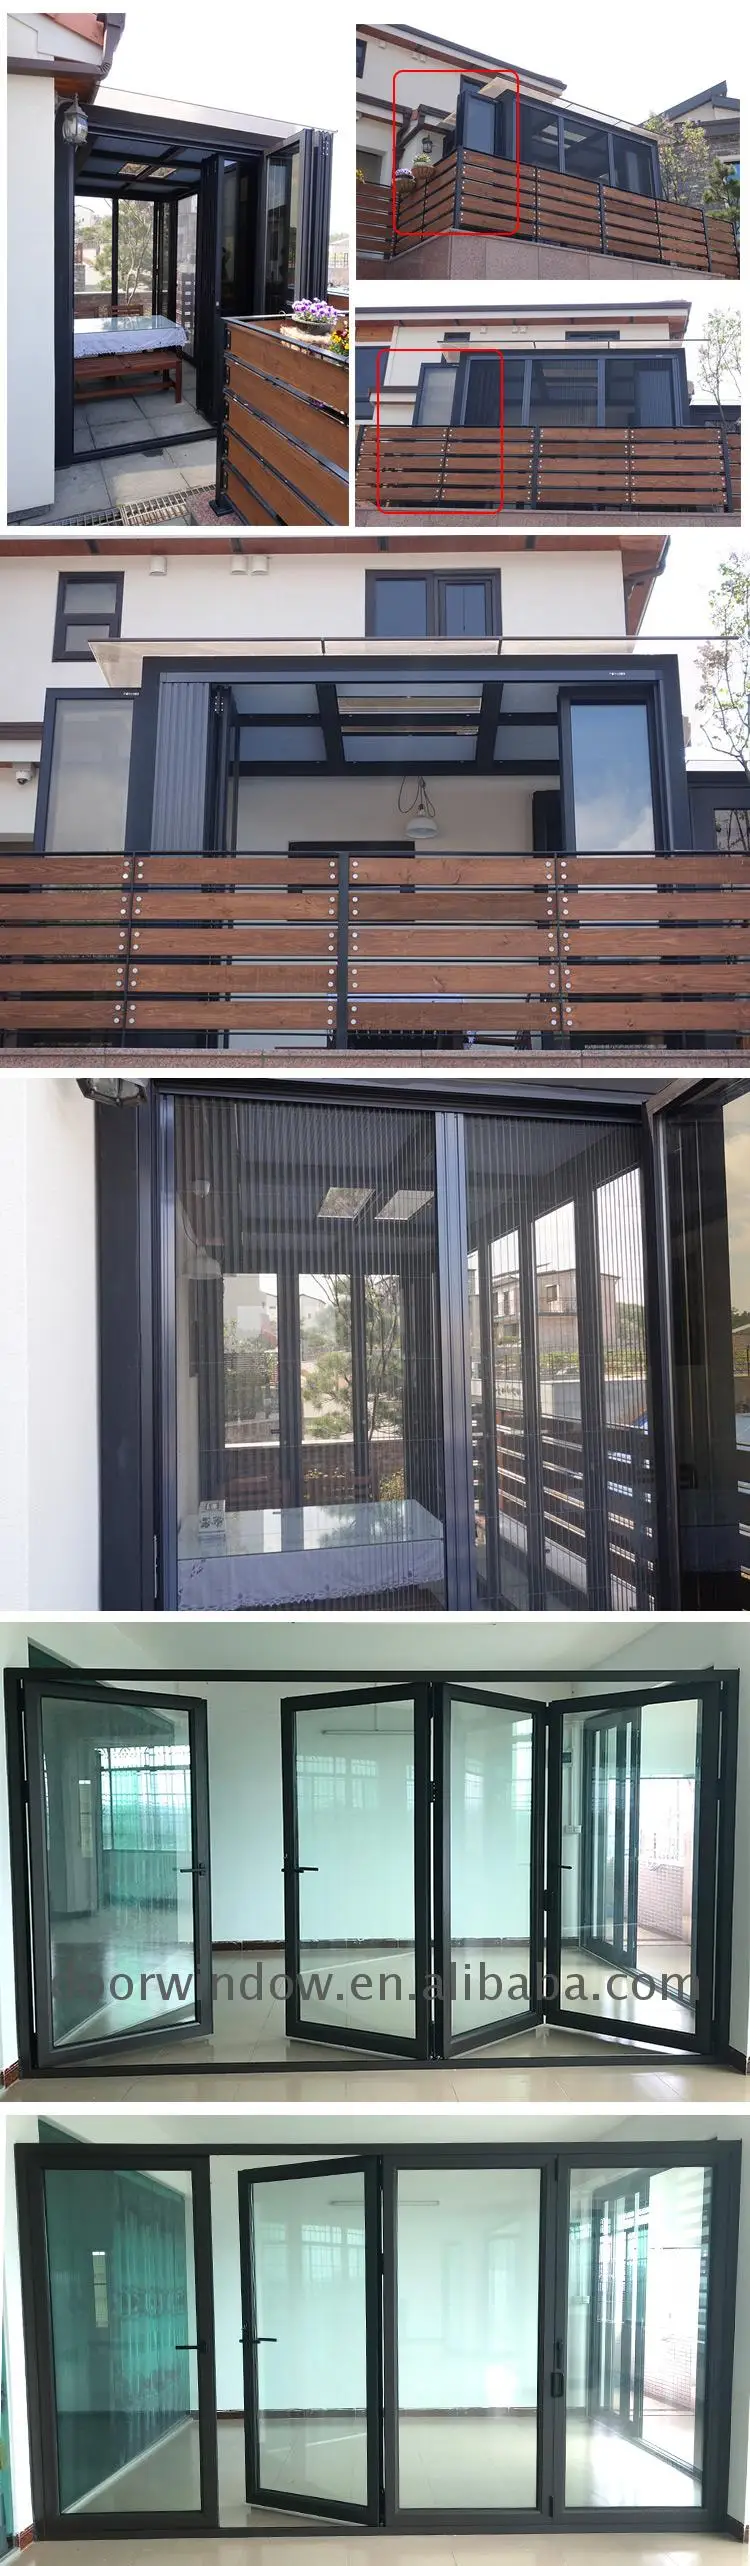 patio prices aluminum windows folding doors